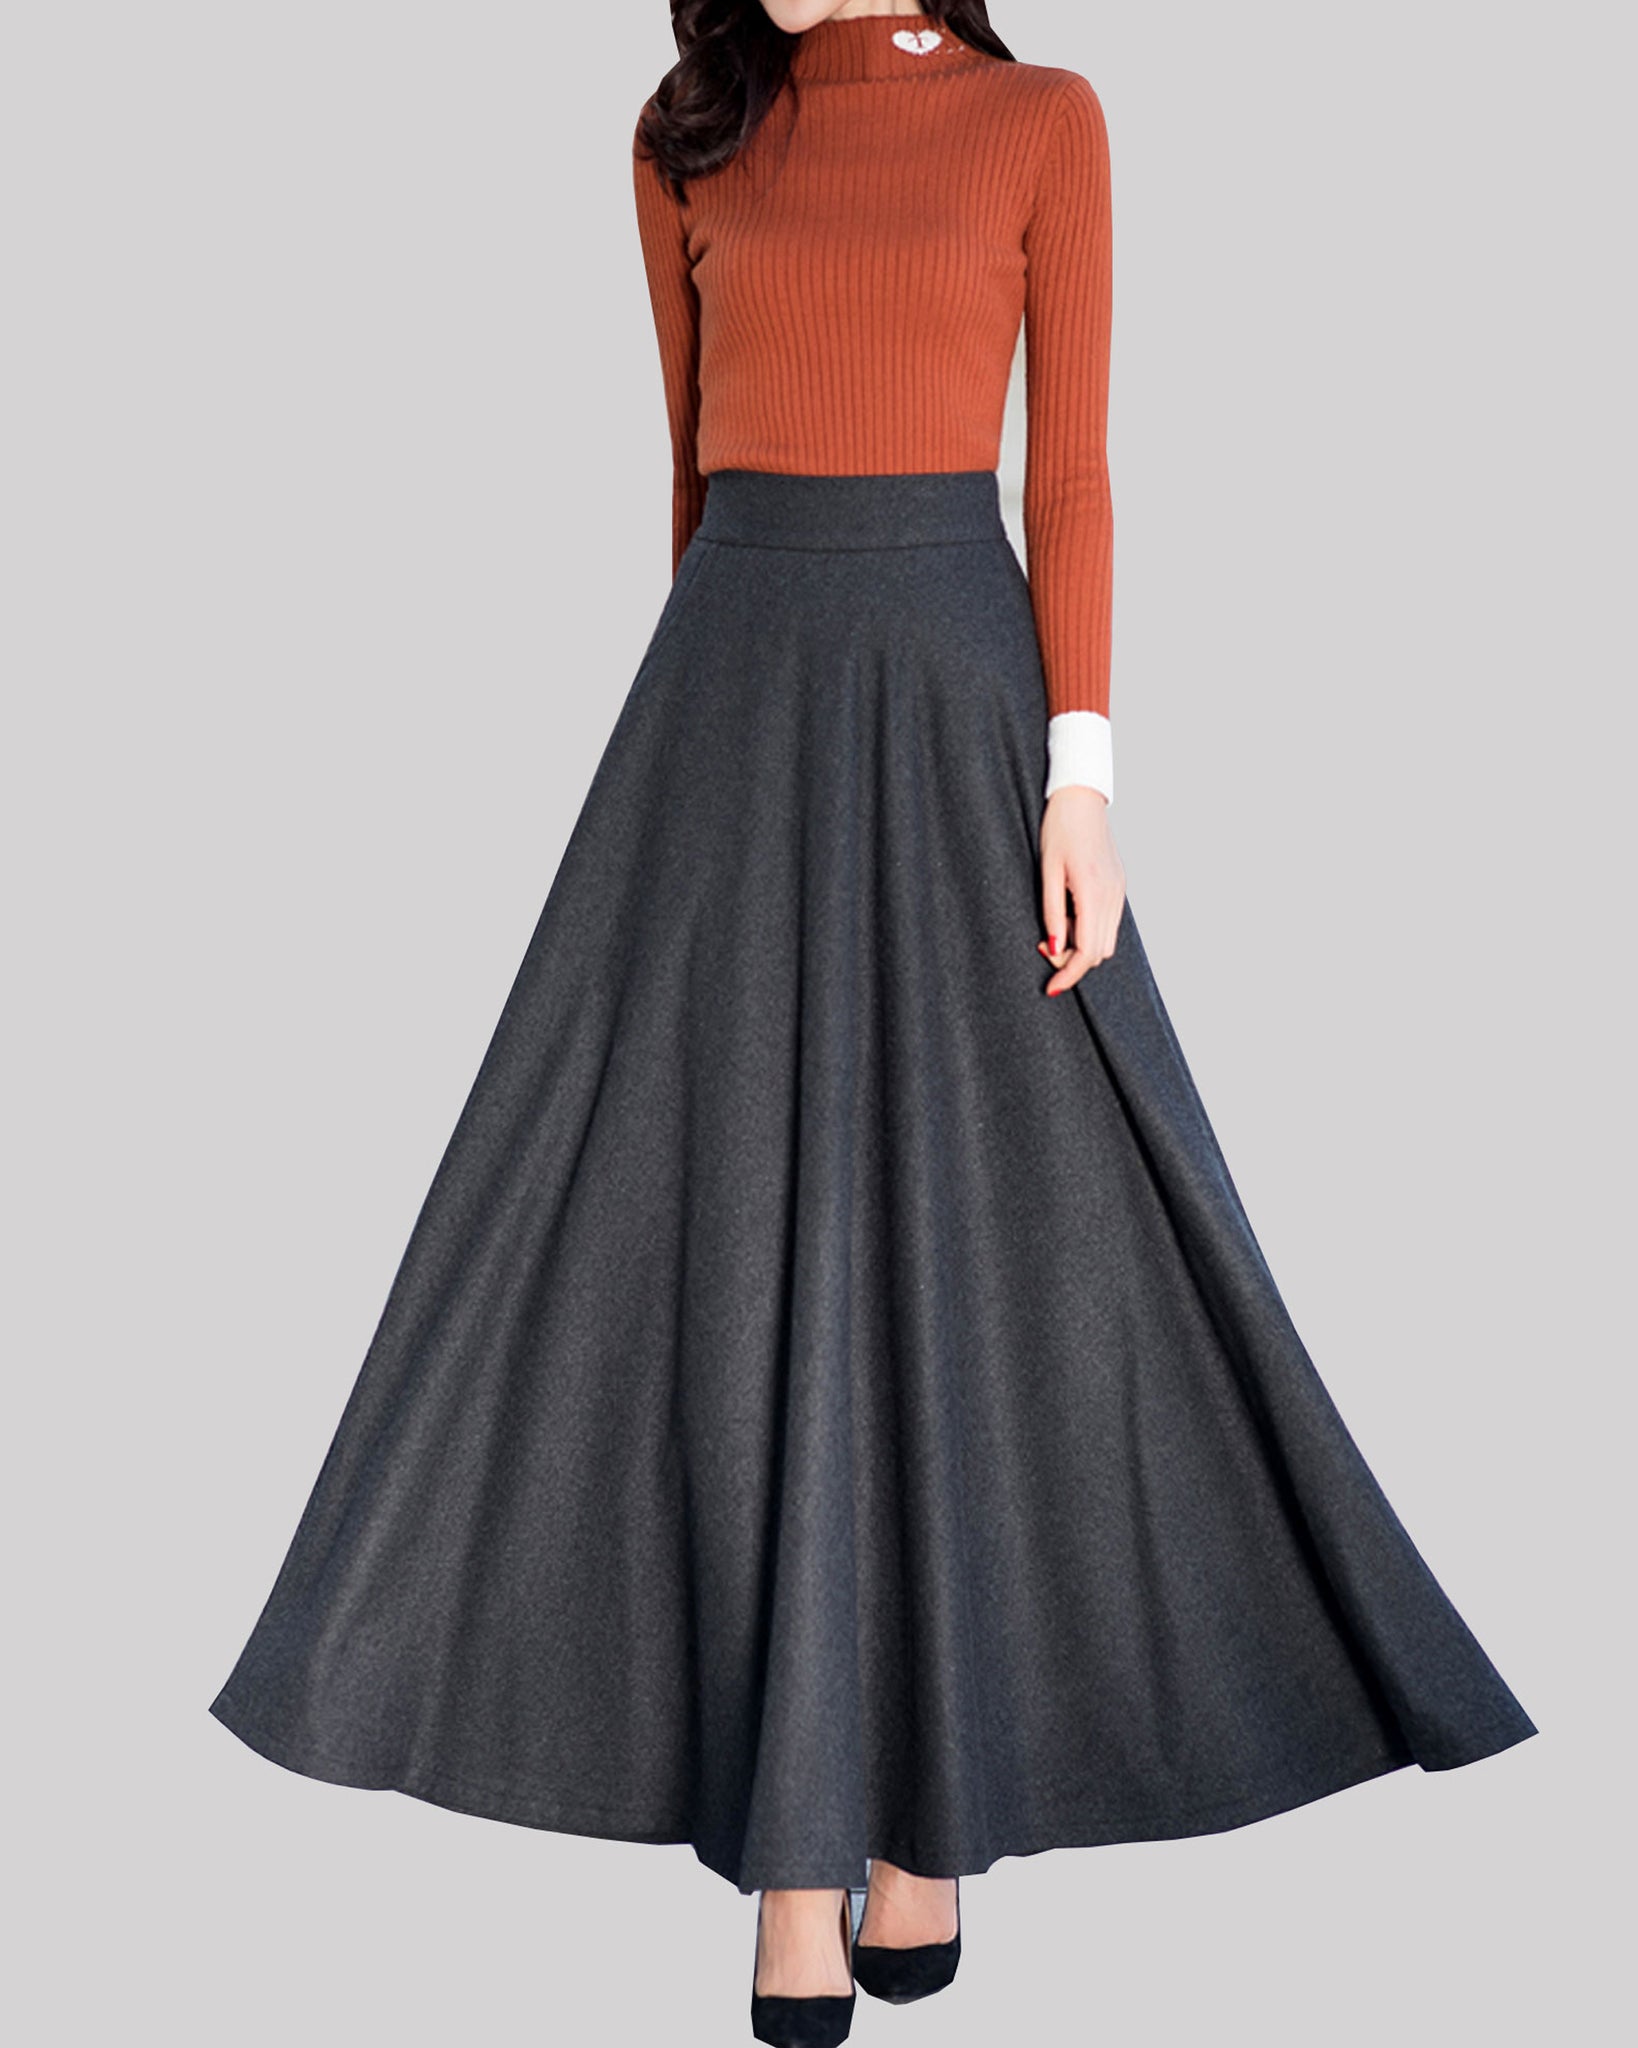 Winter skirt, wool skirt, black skirt, long wool skirt, vintage 